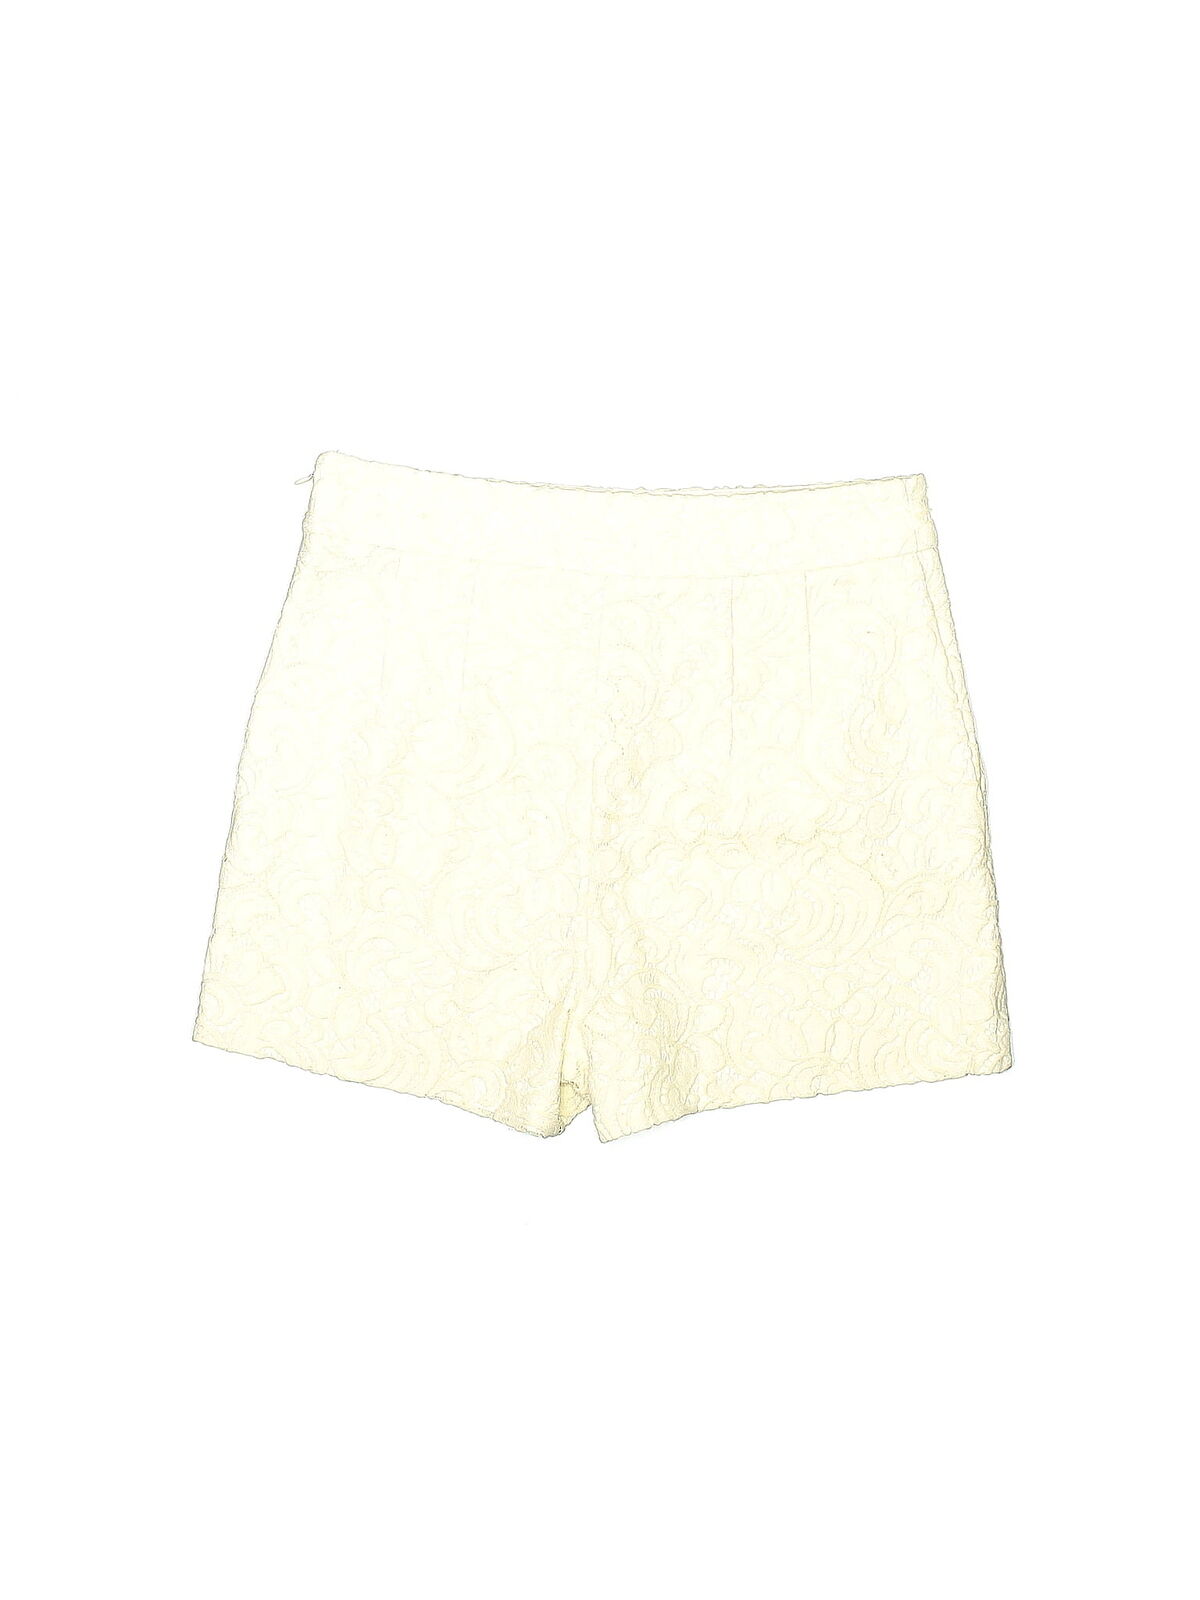 Express Women Ivory Shorts 6 - image 2